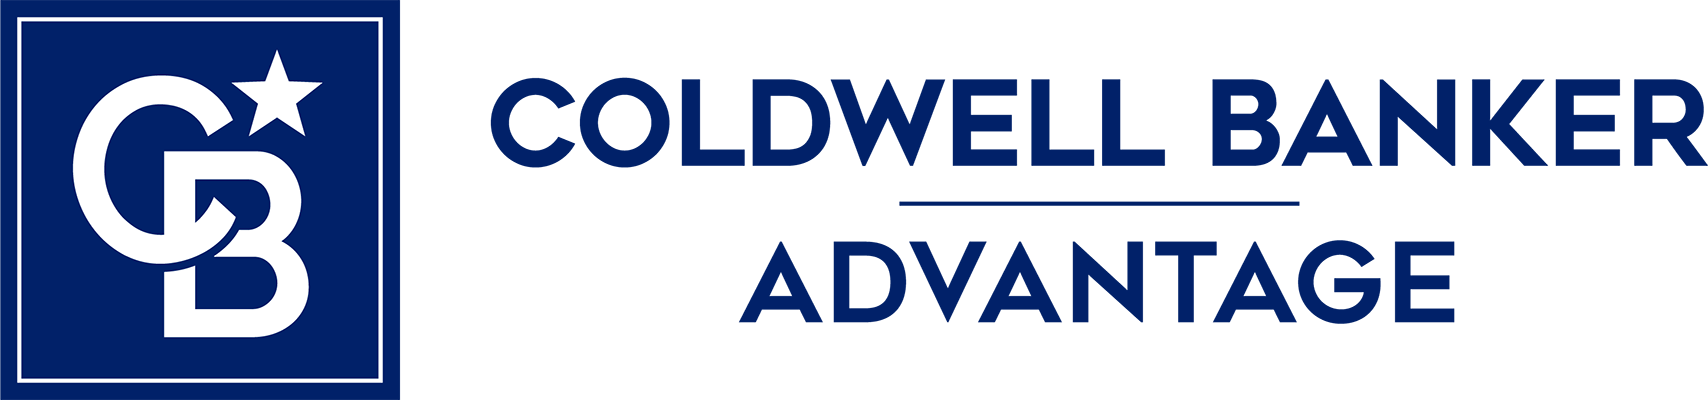 Team Hamel Realty - Coldwell Banker Advantage Logo